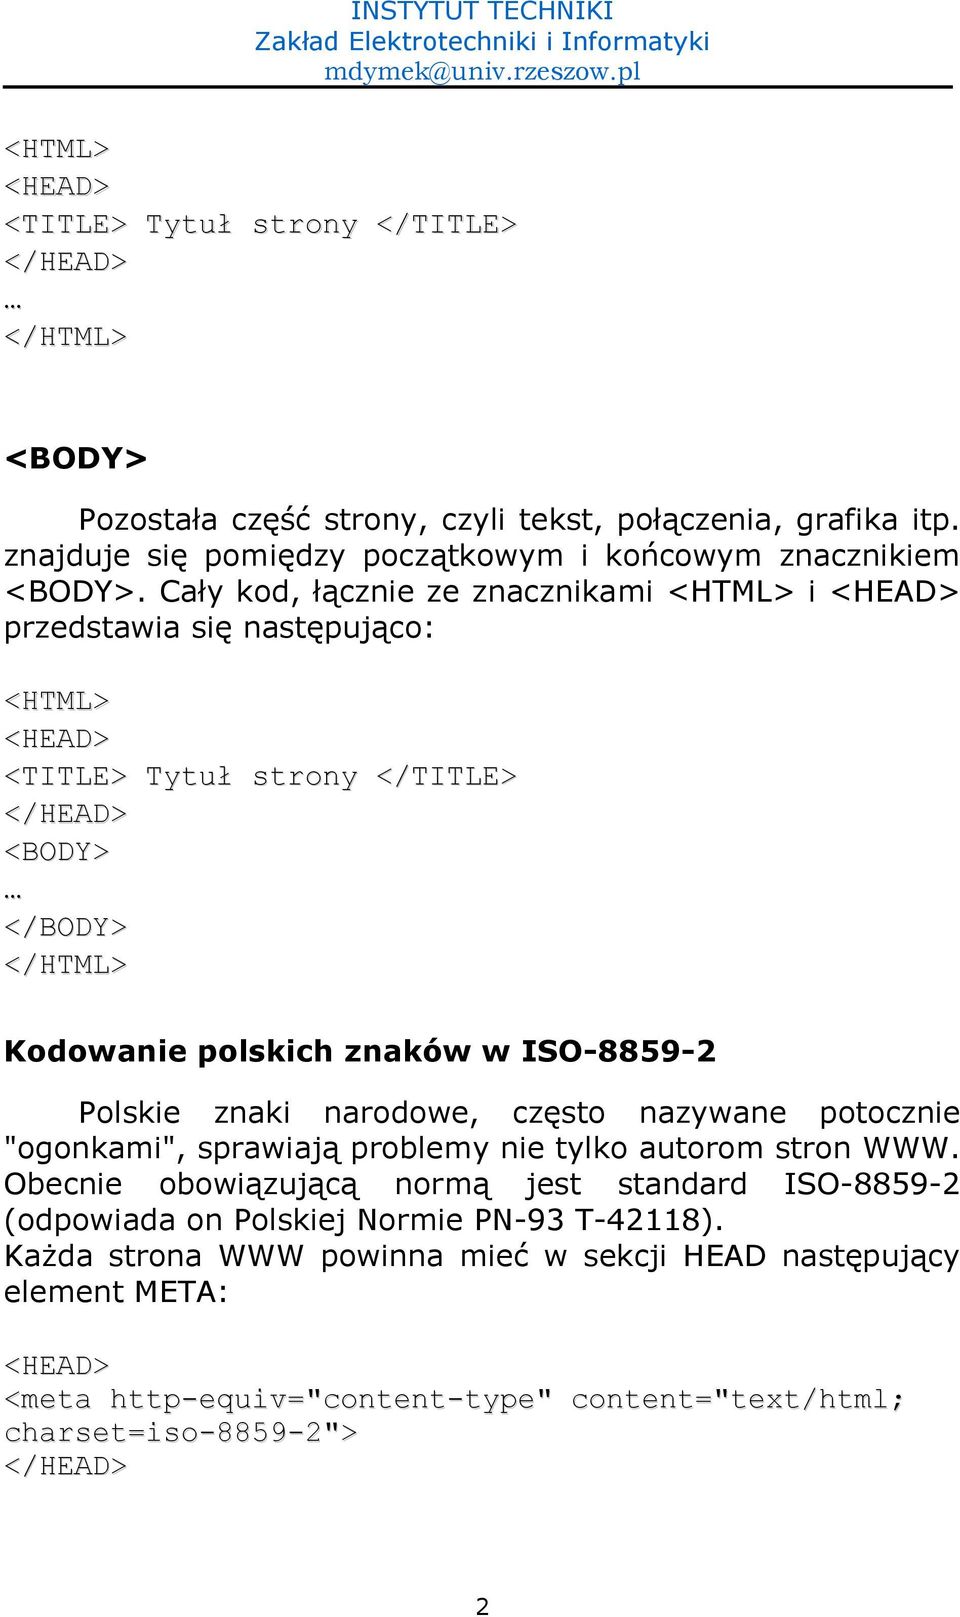 Cay kod, )cznie ze znacznikami <HTML> i <HEAD> przedstawia si- nast-puj)co: <HTML> <HEAD> <TITLE> Tytu strony </TITLE> </HEAD> <BODY> </BODY> </HTML> Kodowanie polskich znaków w